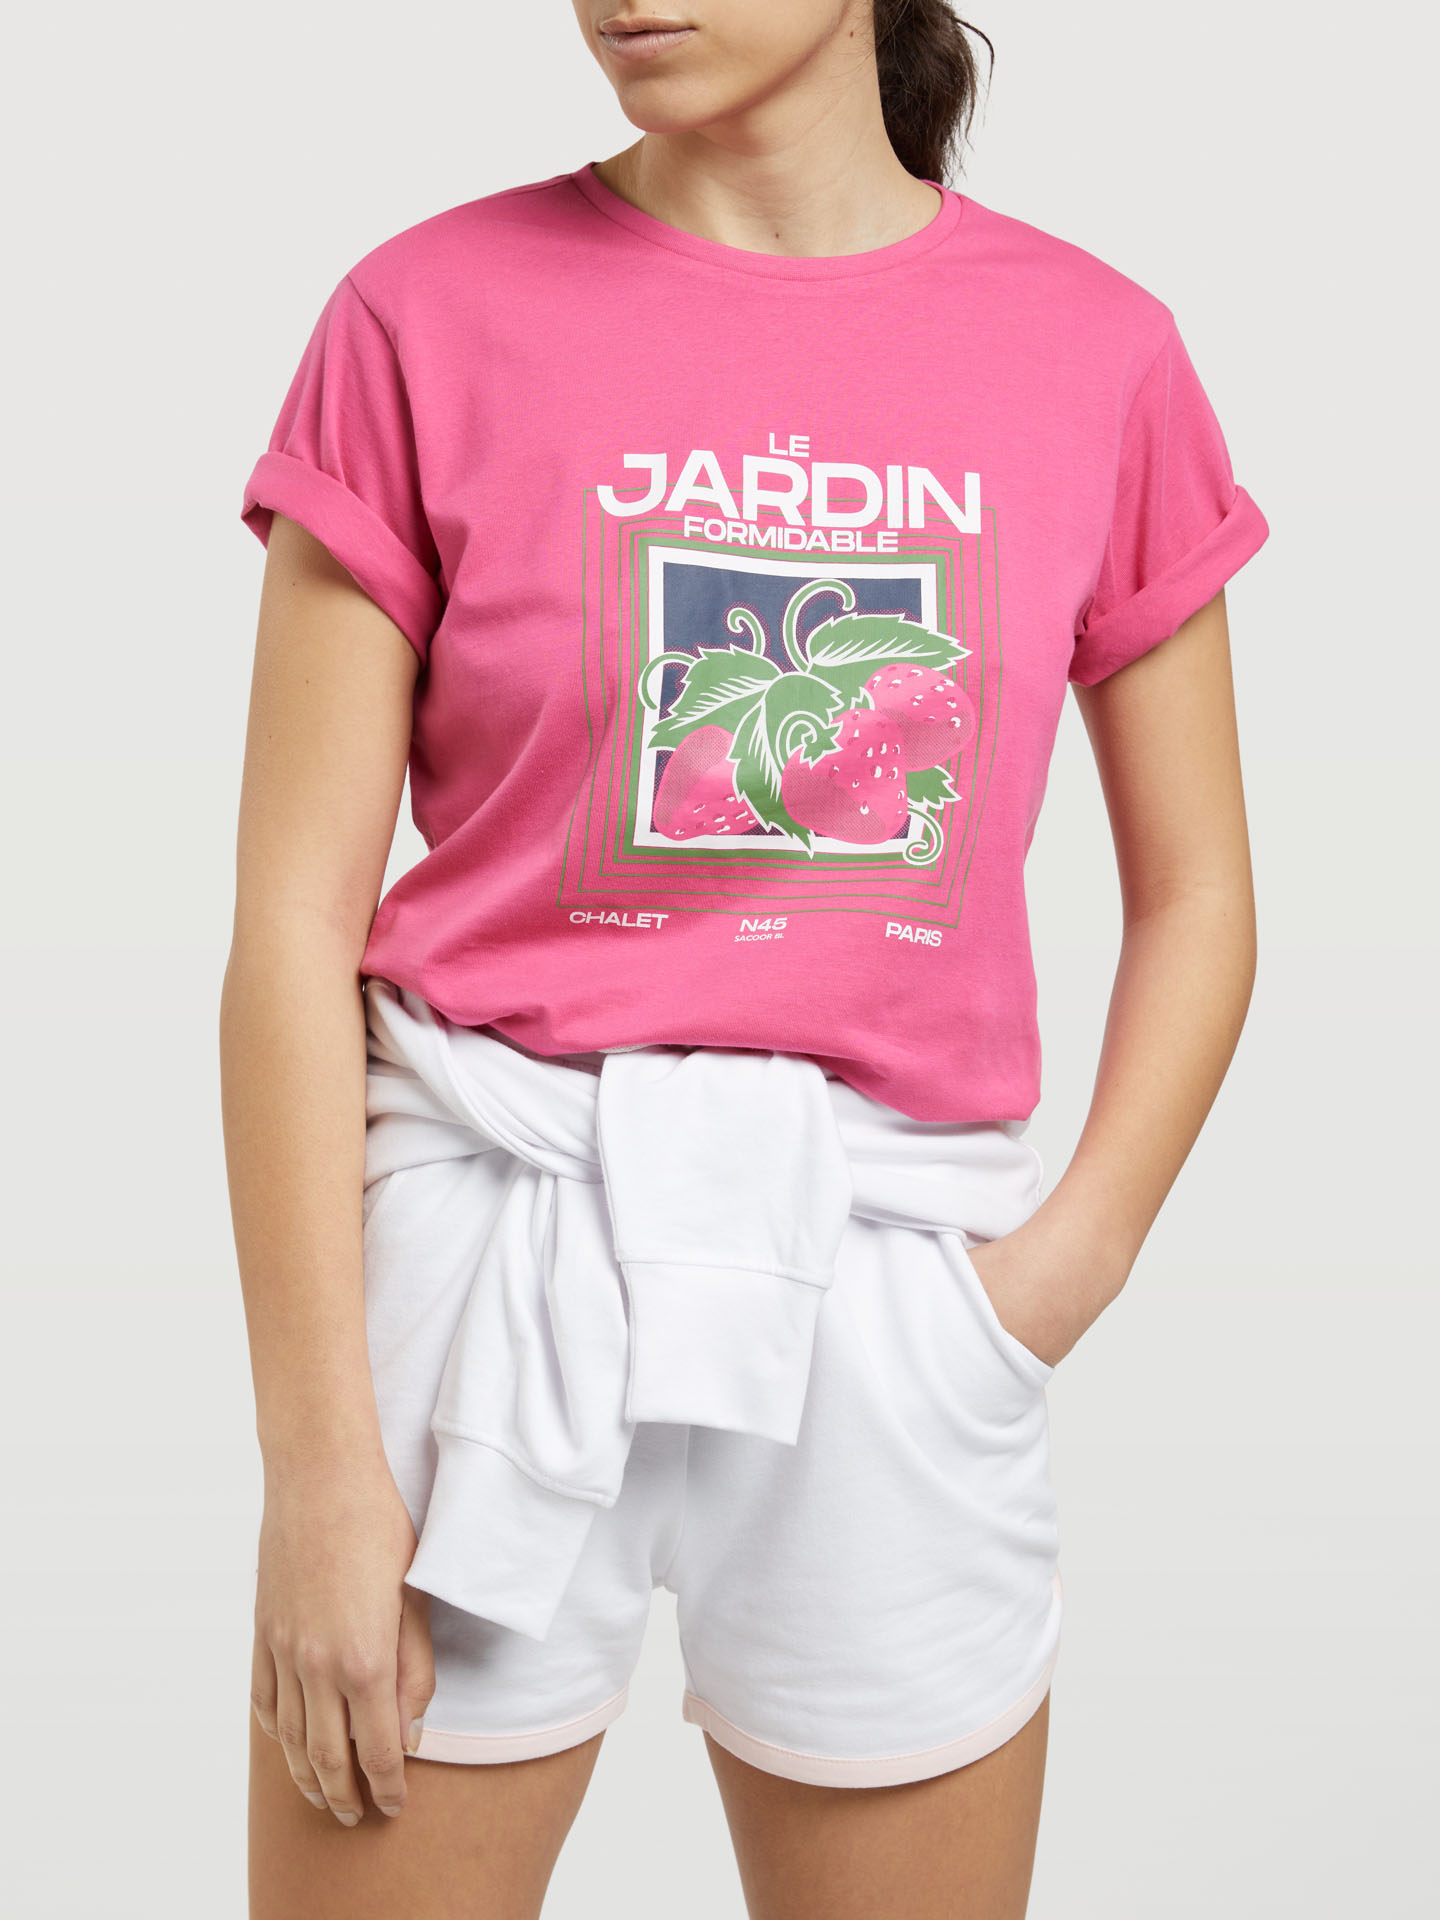 T-Shirt Fuchsia Casual Woman